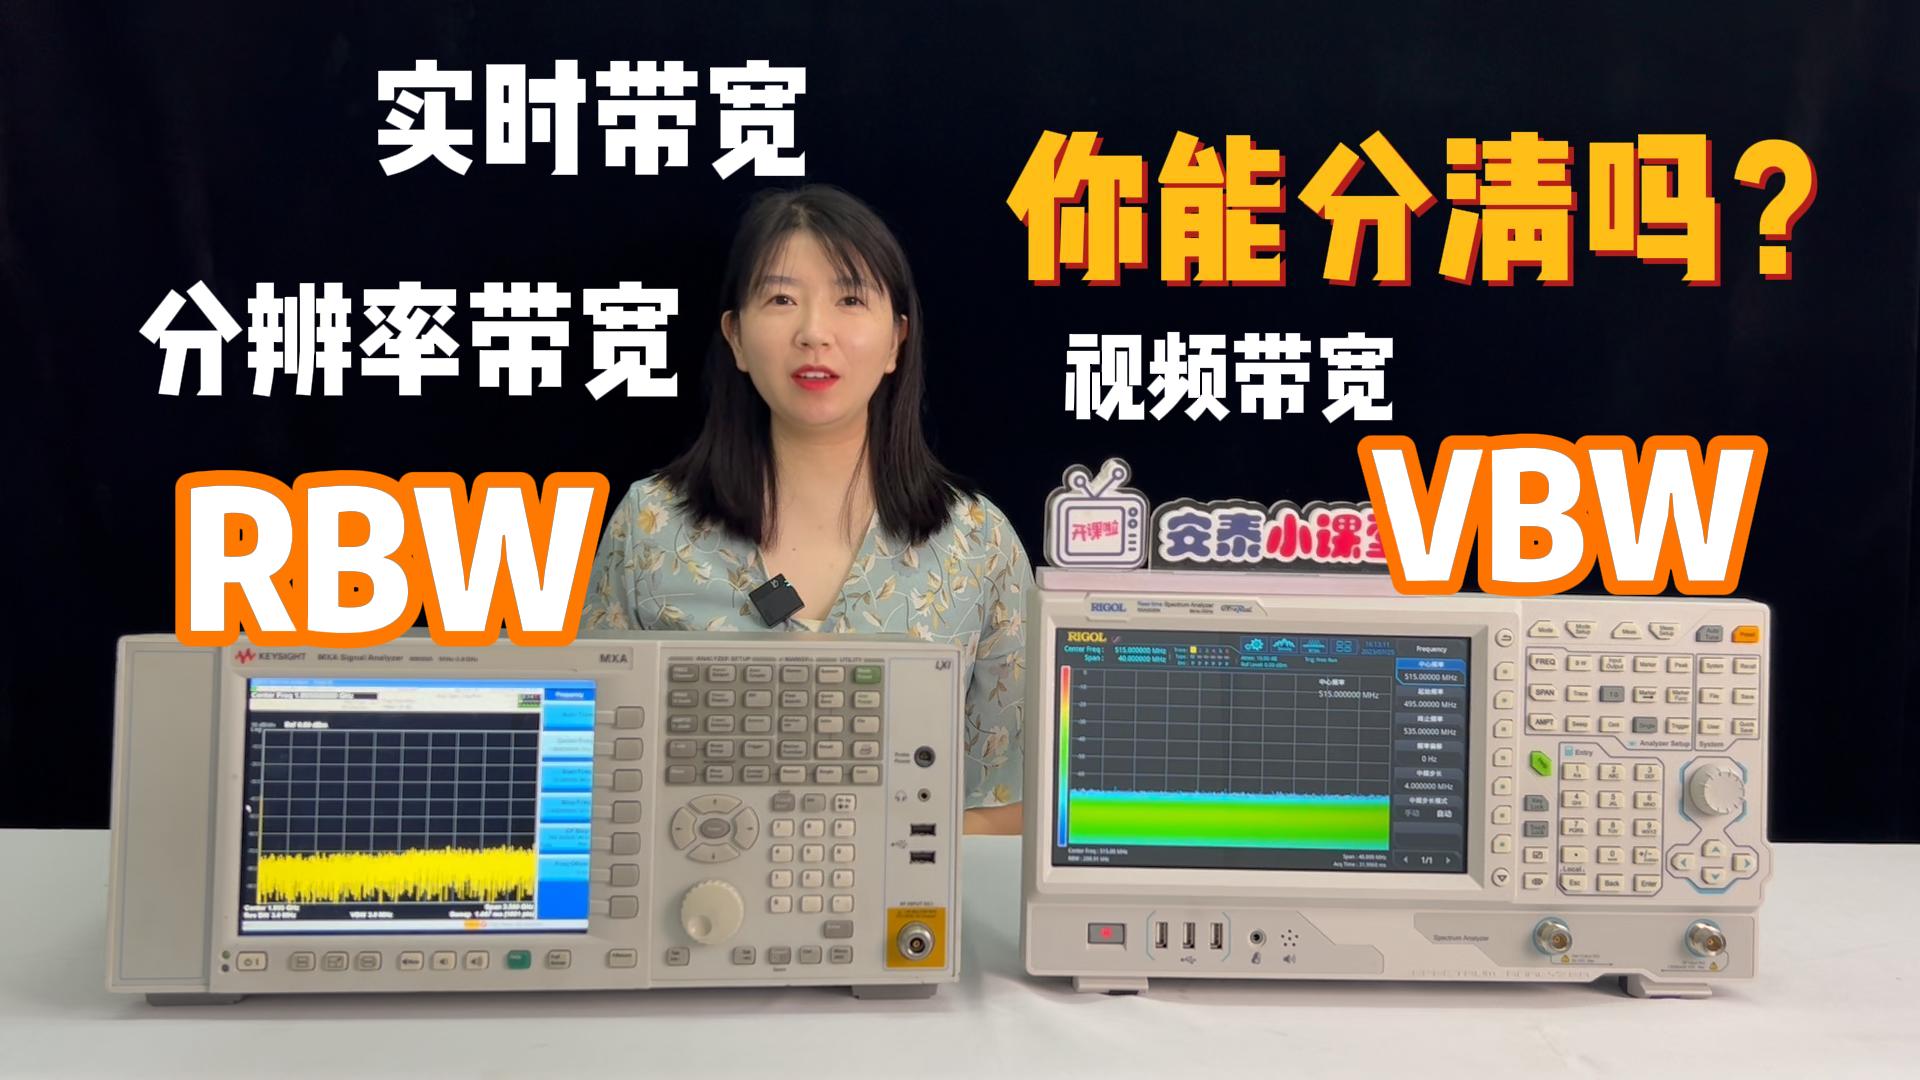 频谱分析仪的众多带宽你分得清吗？测试微小信号选哪个？#RBW #频谱分析仪 #频谱仪 #带宽 #分辨率带宽 